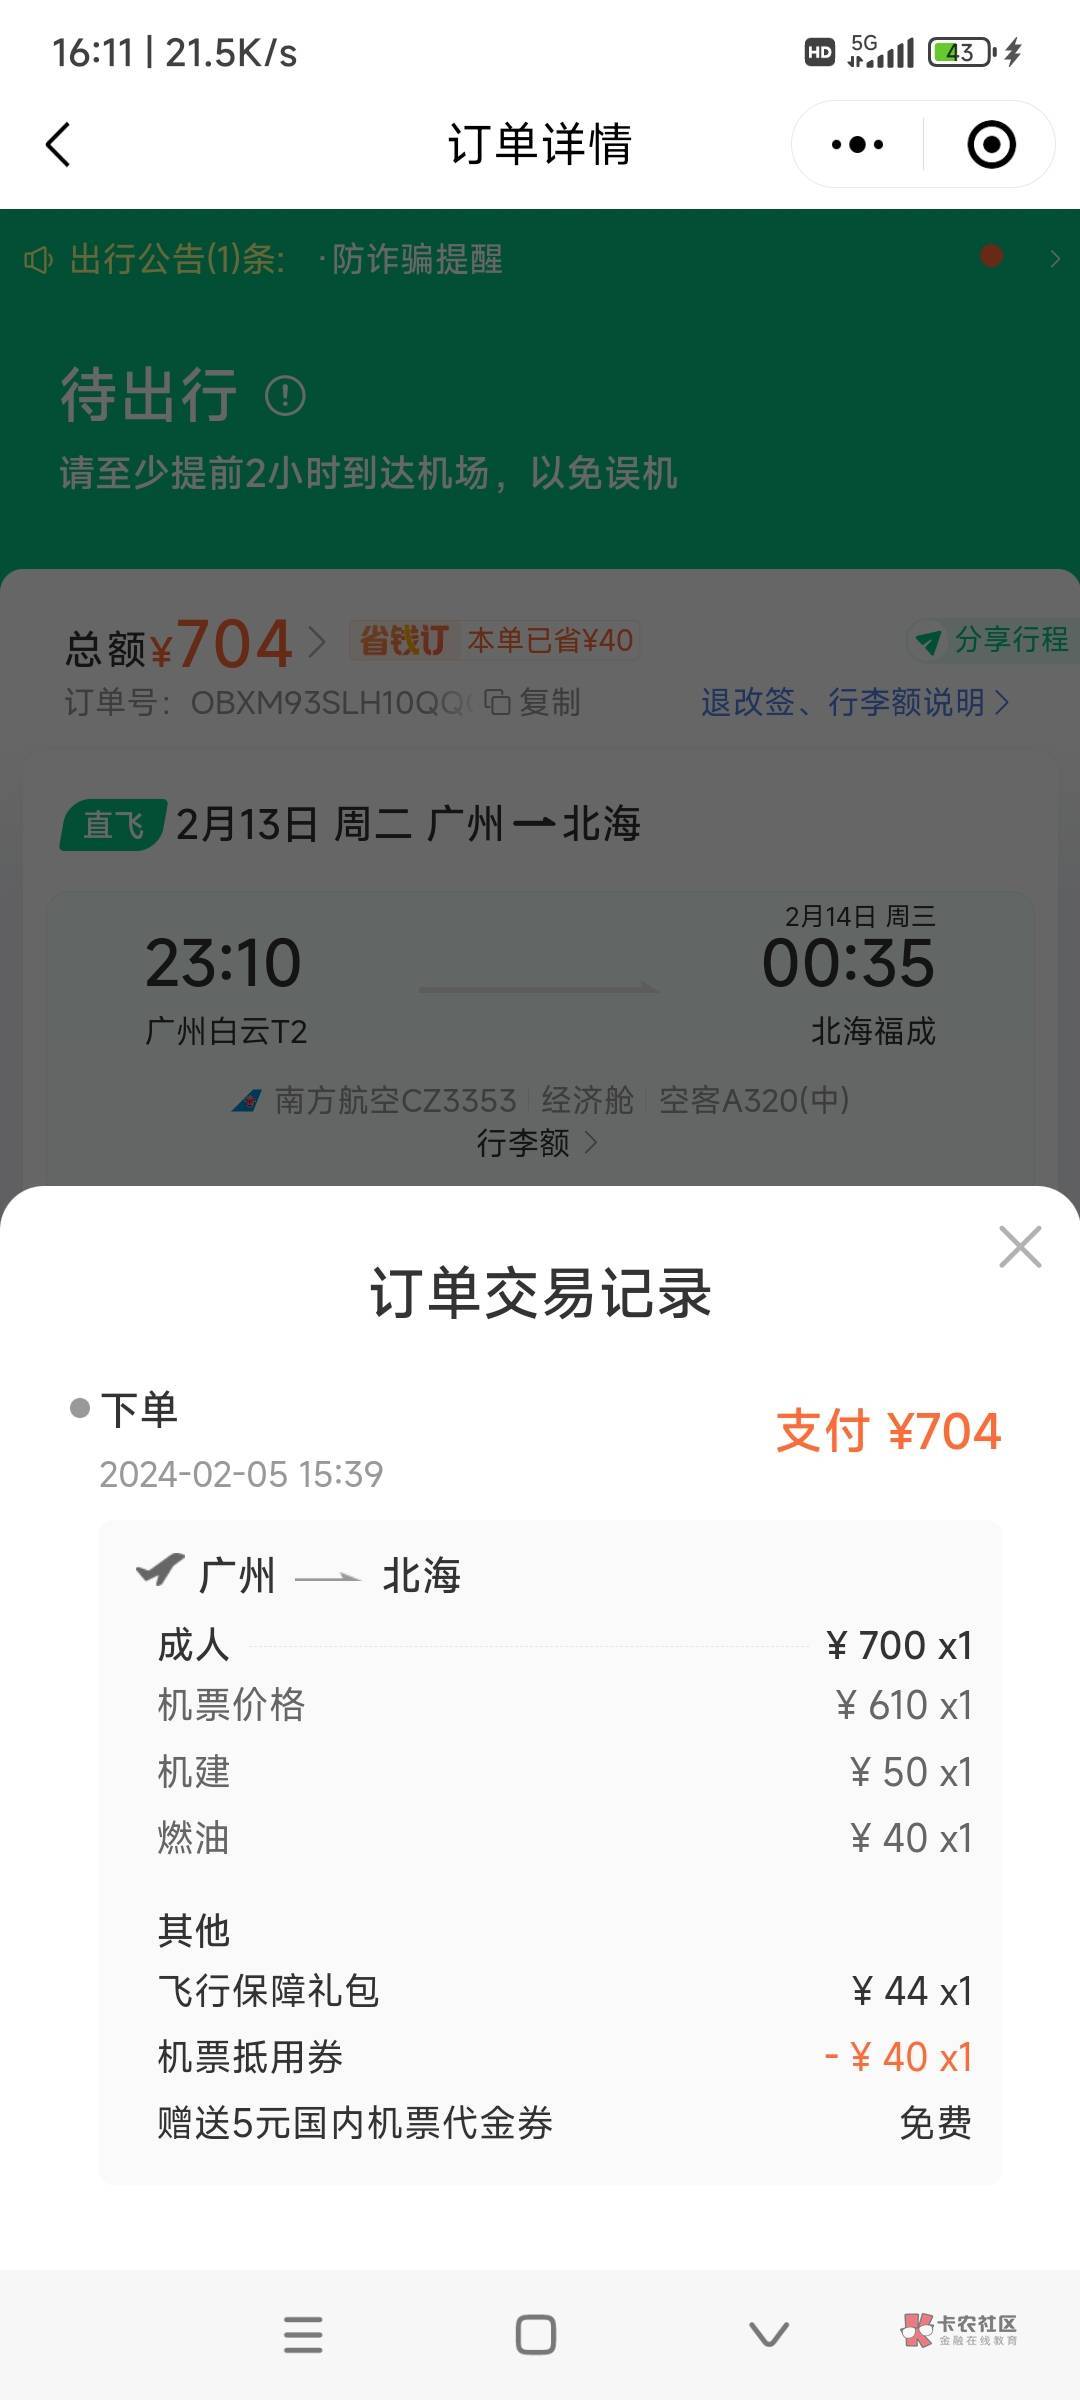 同程南航第4次毕业了129.37利润，买广州到北海机票700退款是780，用了同程40机票和宁92 / 作者:时日无多 / 